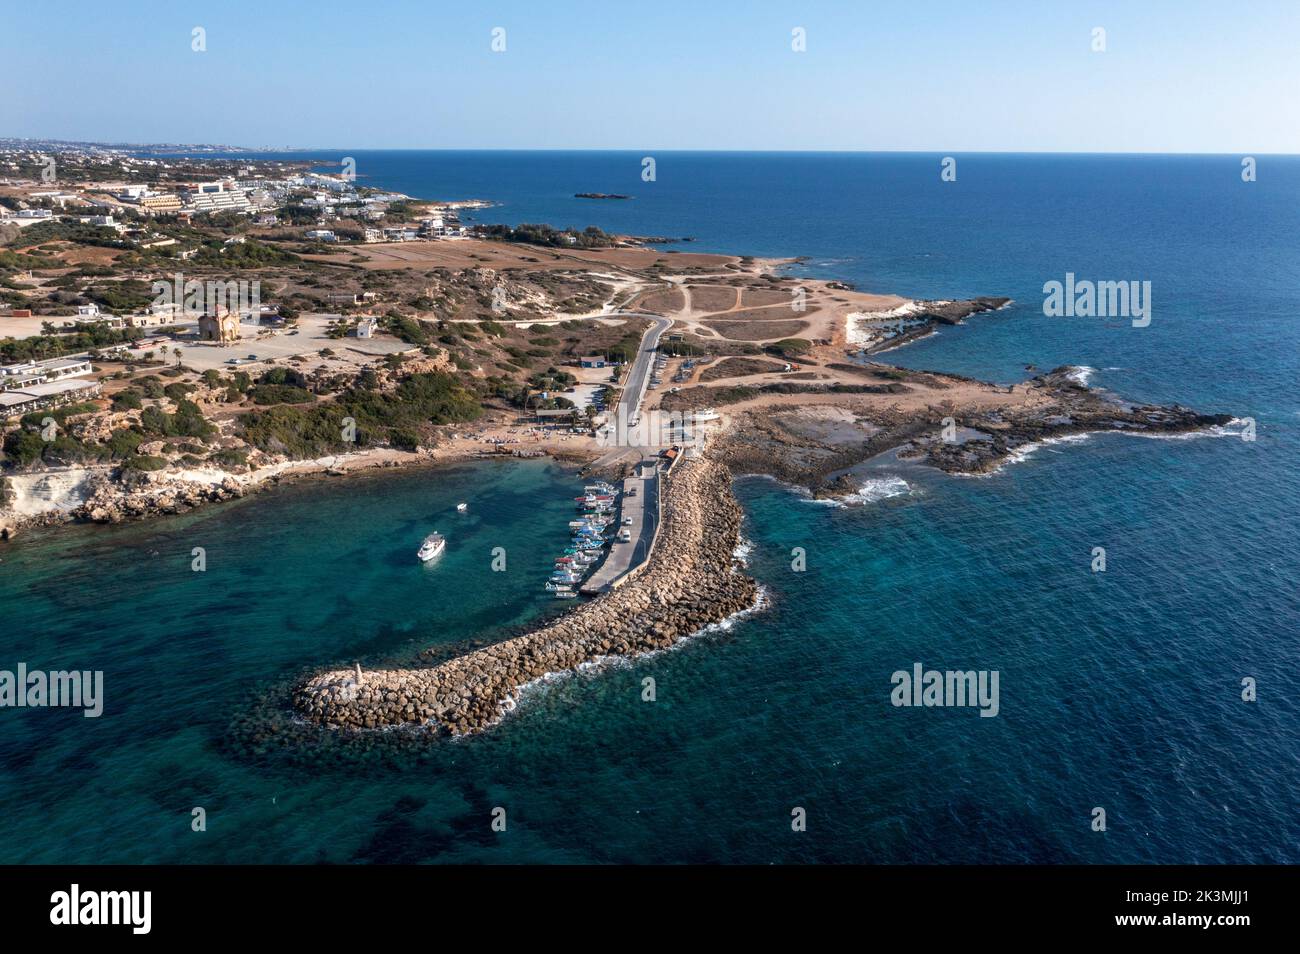 Vista aérea del puerto de Agios Georgios (St Georges), Akamas, región de Paphos, Chipre. Foto de stock